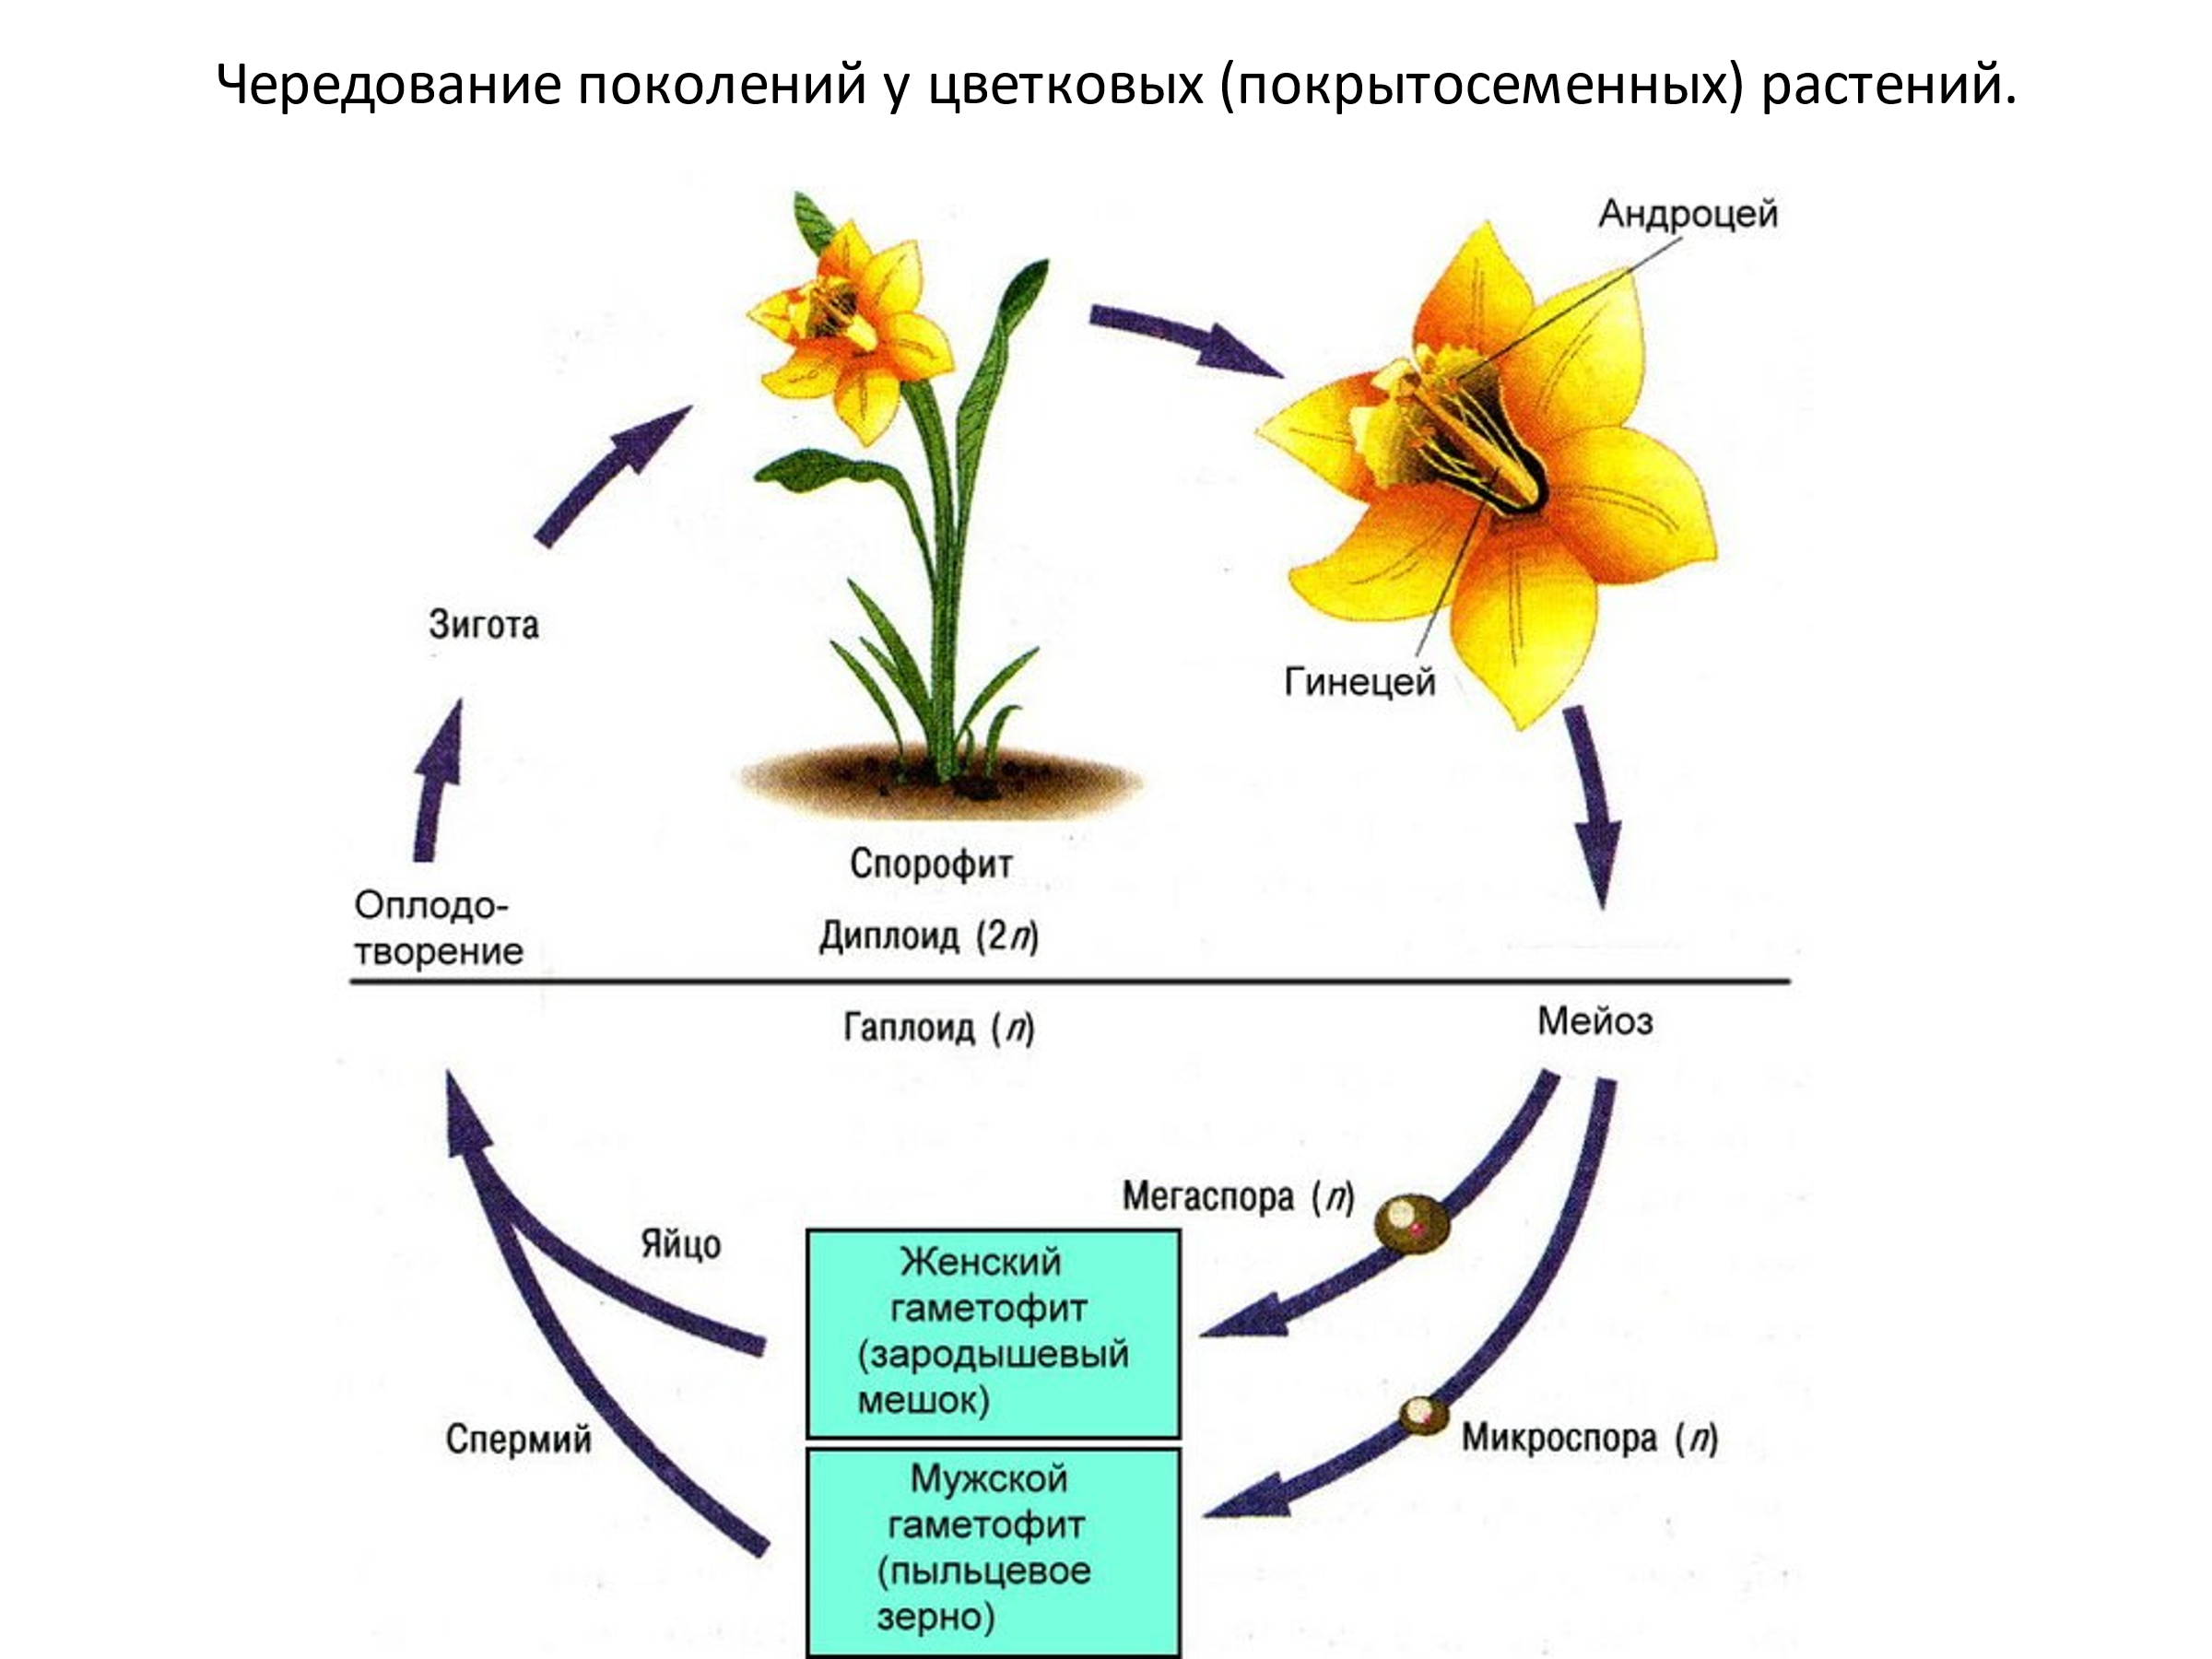 Женский спорофит. Жизненный цикл цветковых растений гаметофит. Стадии жизненного цикла цветковых растений. Гаметофит и спорофит у покрытосеменных растений. Этапы развития цветковых растений.